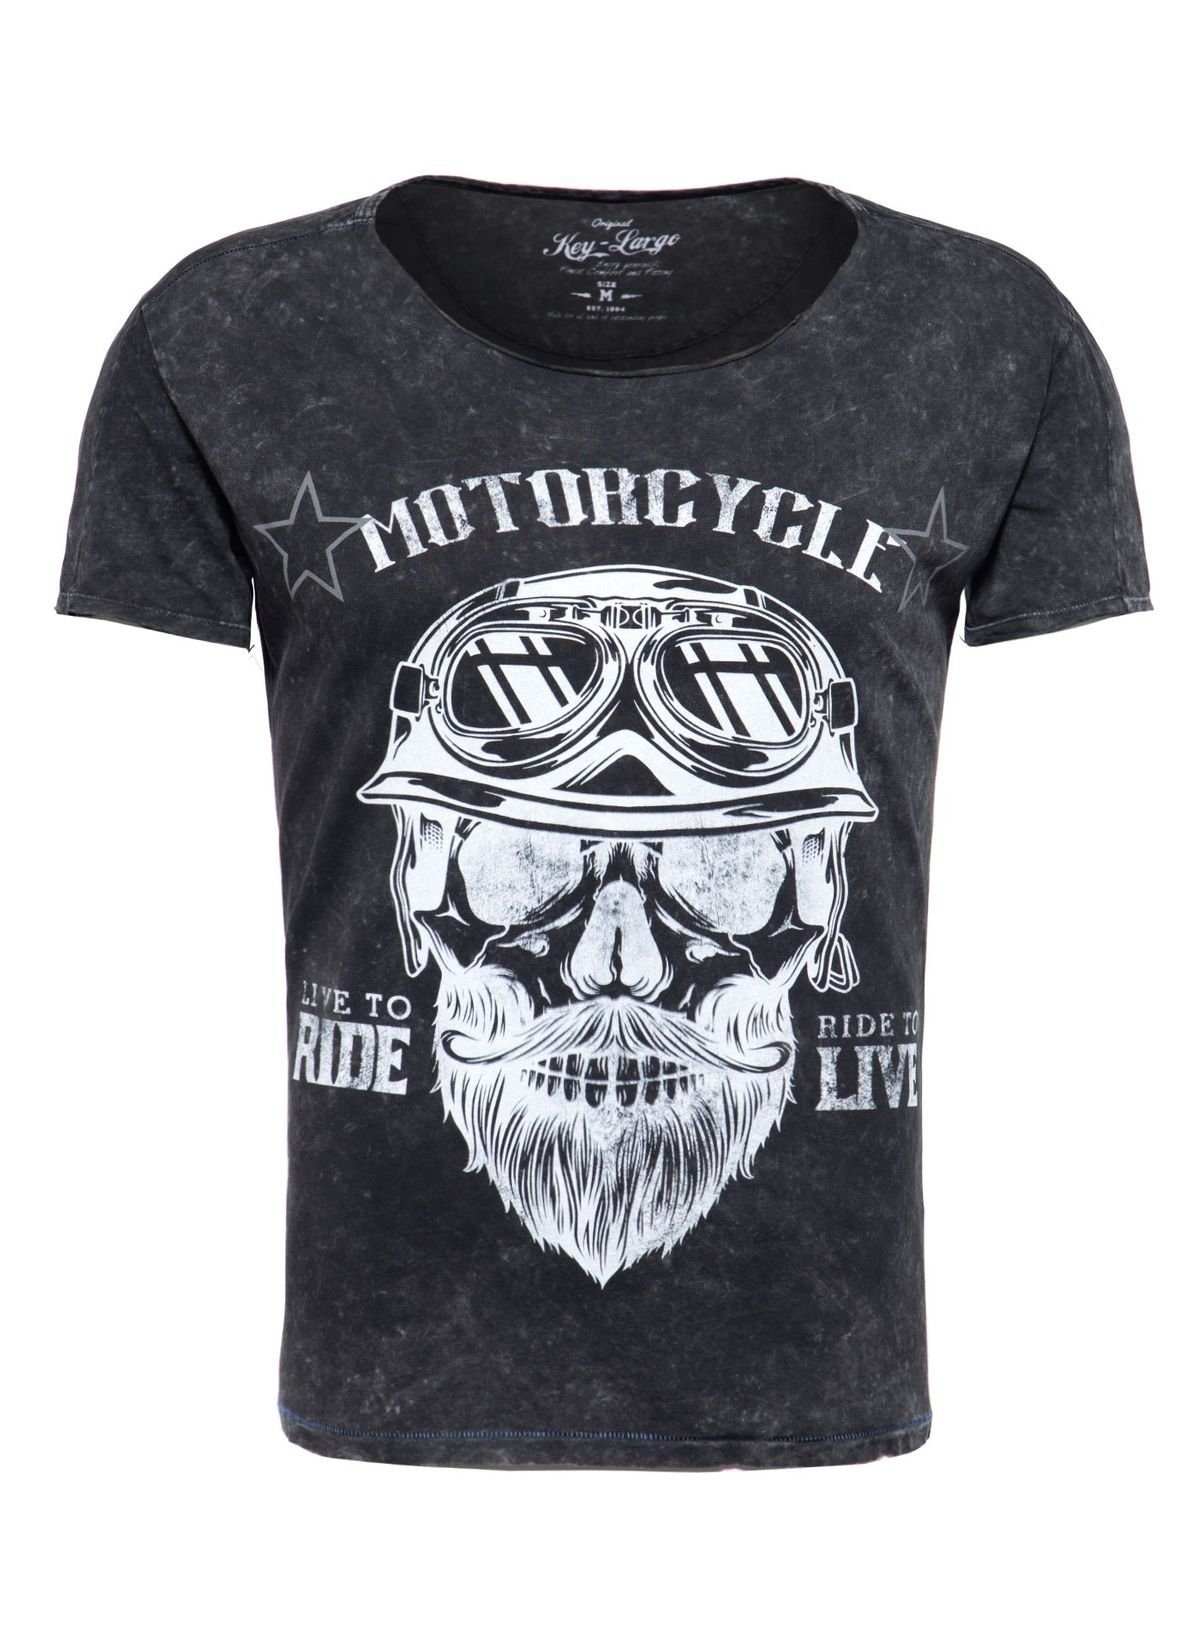 Key Largo T-Shirt für Rundhalsauschnitt Schwarz Herren Motiv MT00203 Skull fit kurzarm Print slim Biker bedruckt Look Bearded vintage